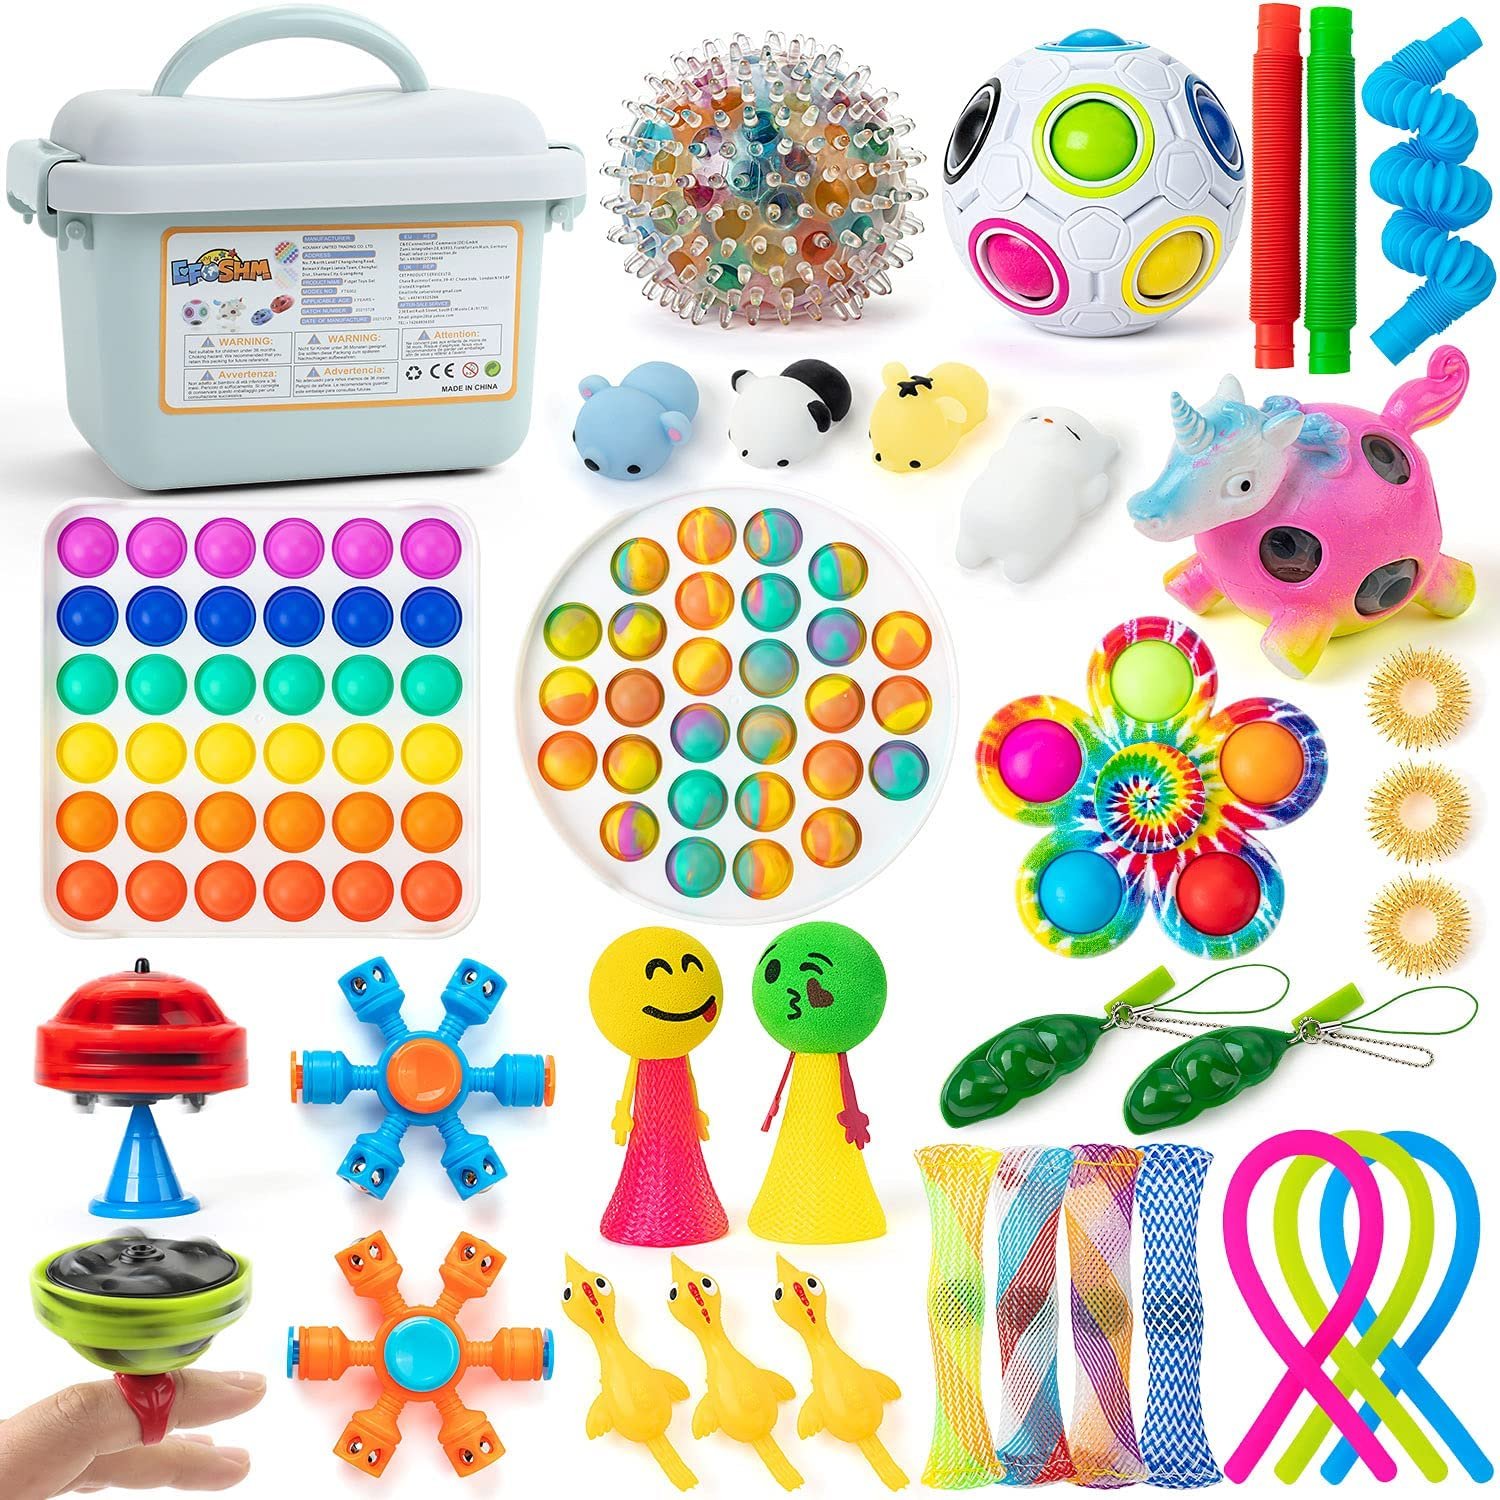 Juguete antiestres Autismo para niños y Adultos Push Pop Bubble Sensory Toy Relajante. La Cosa Tiene Tela Fidget Toy 